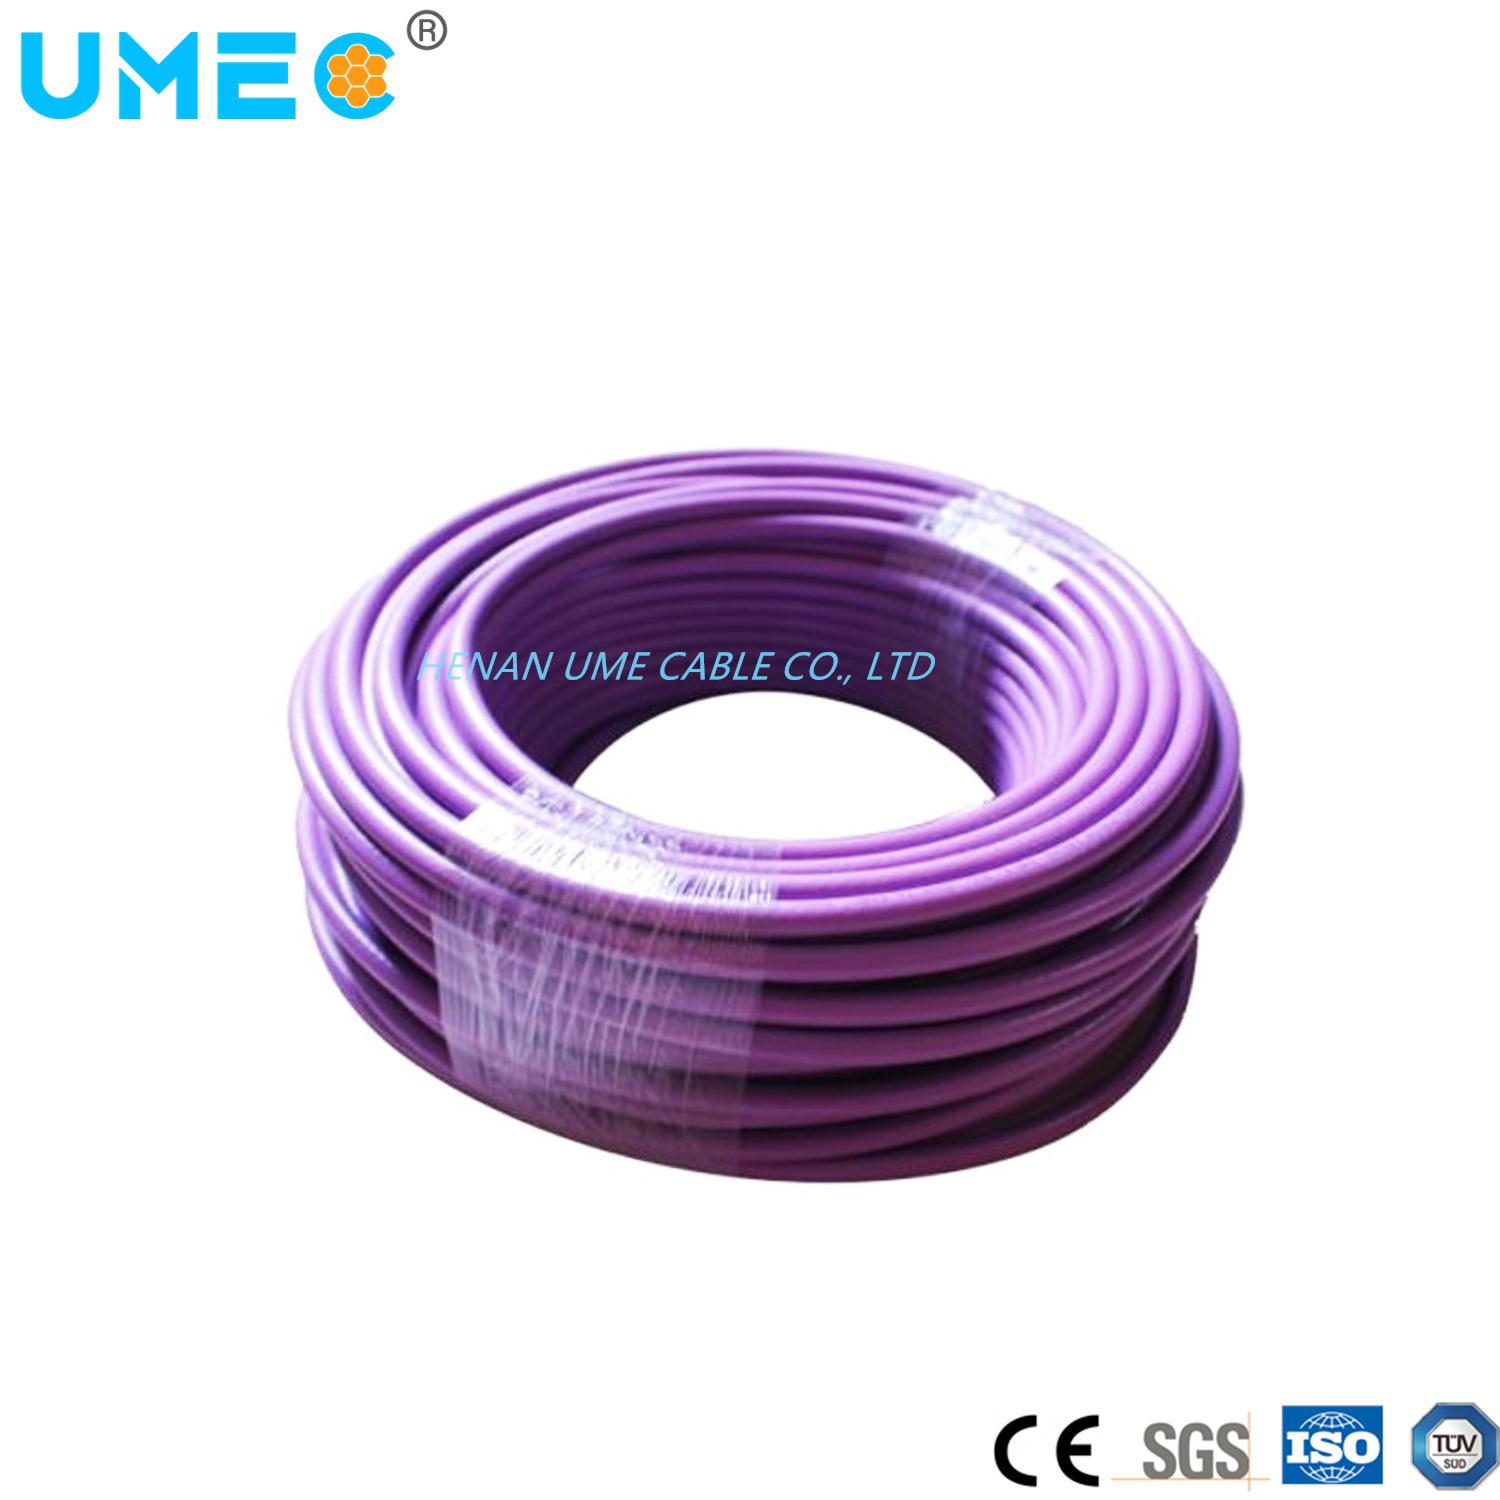 
                Fil et câble/câble violet 6xv câble en cuivre 6xv1830-0eh10 basse tension Câble de connexion
            